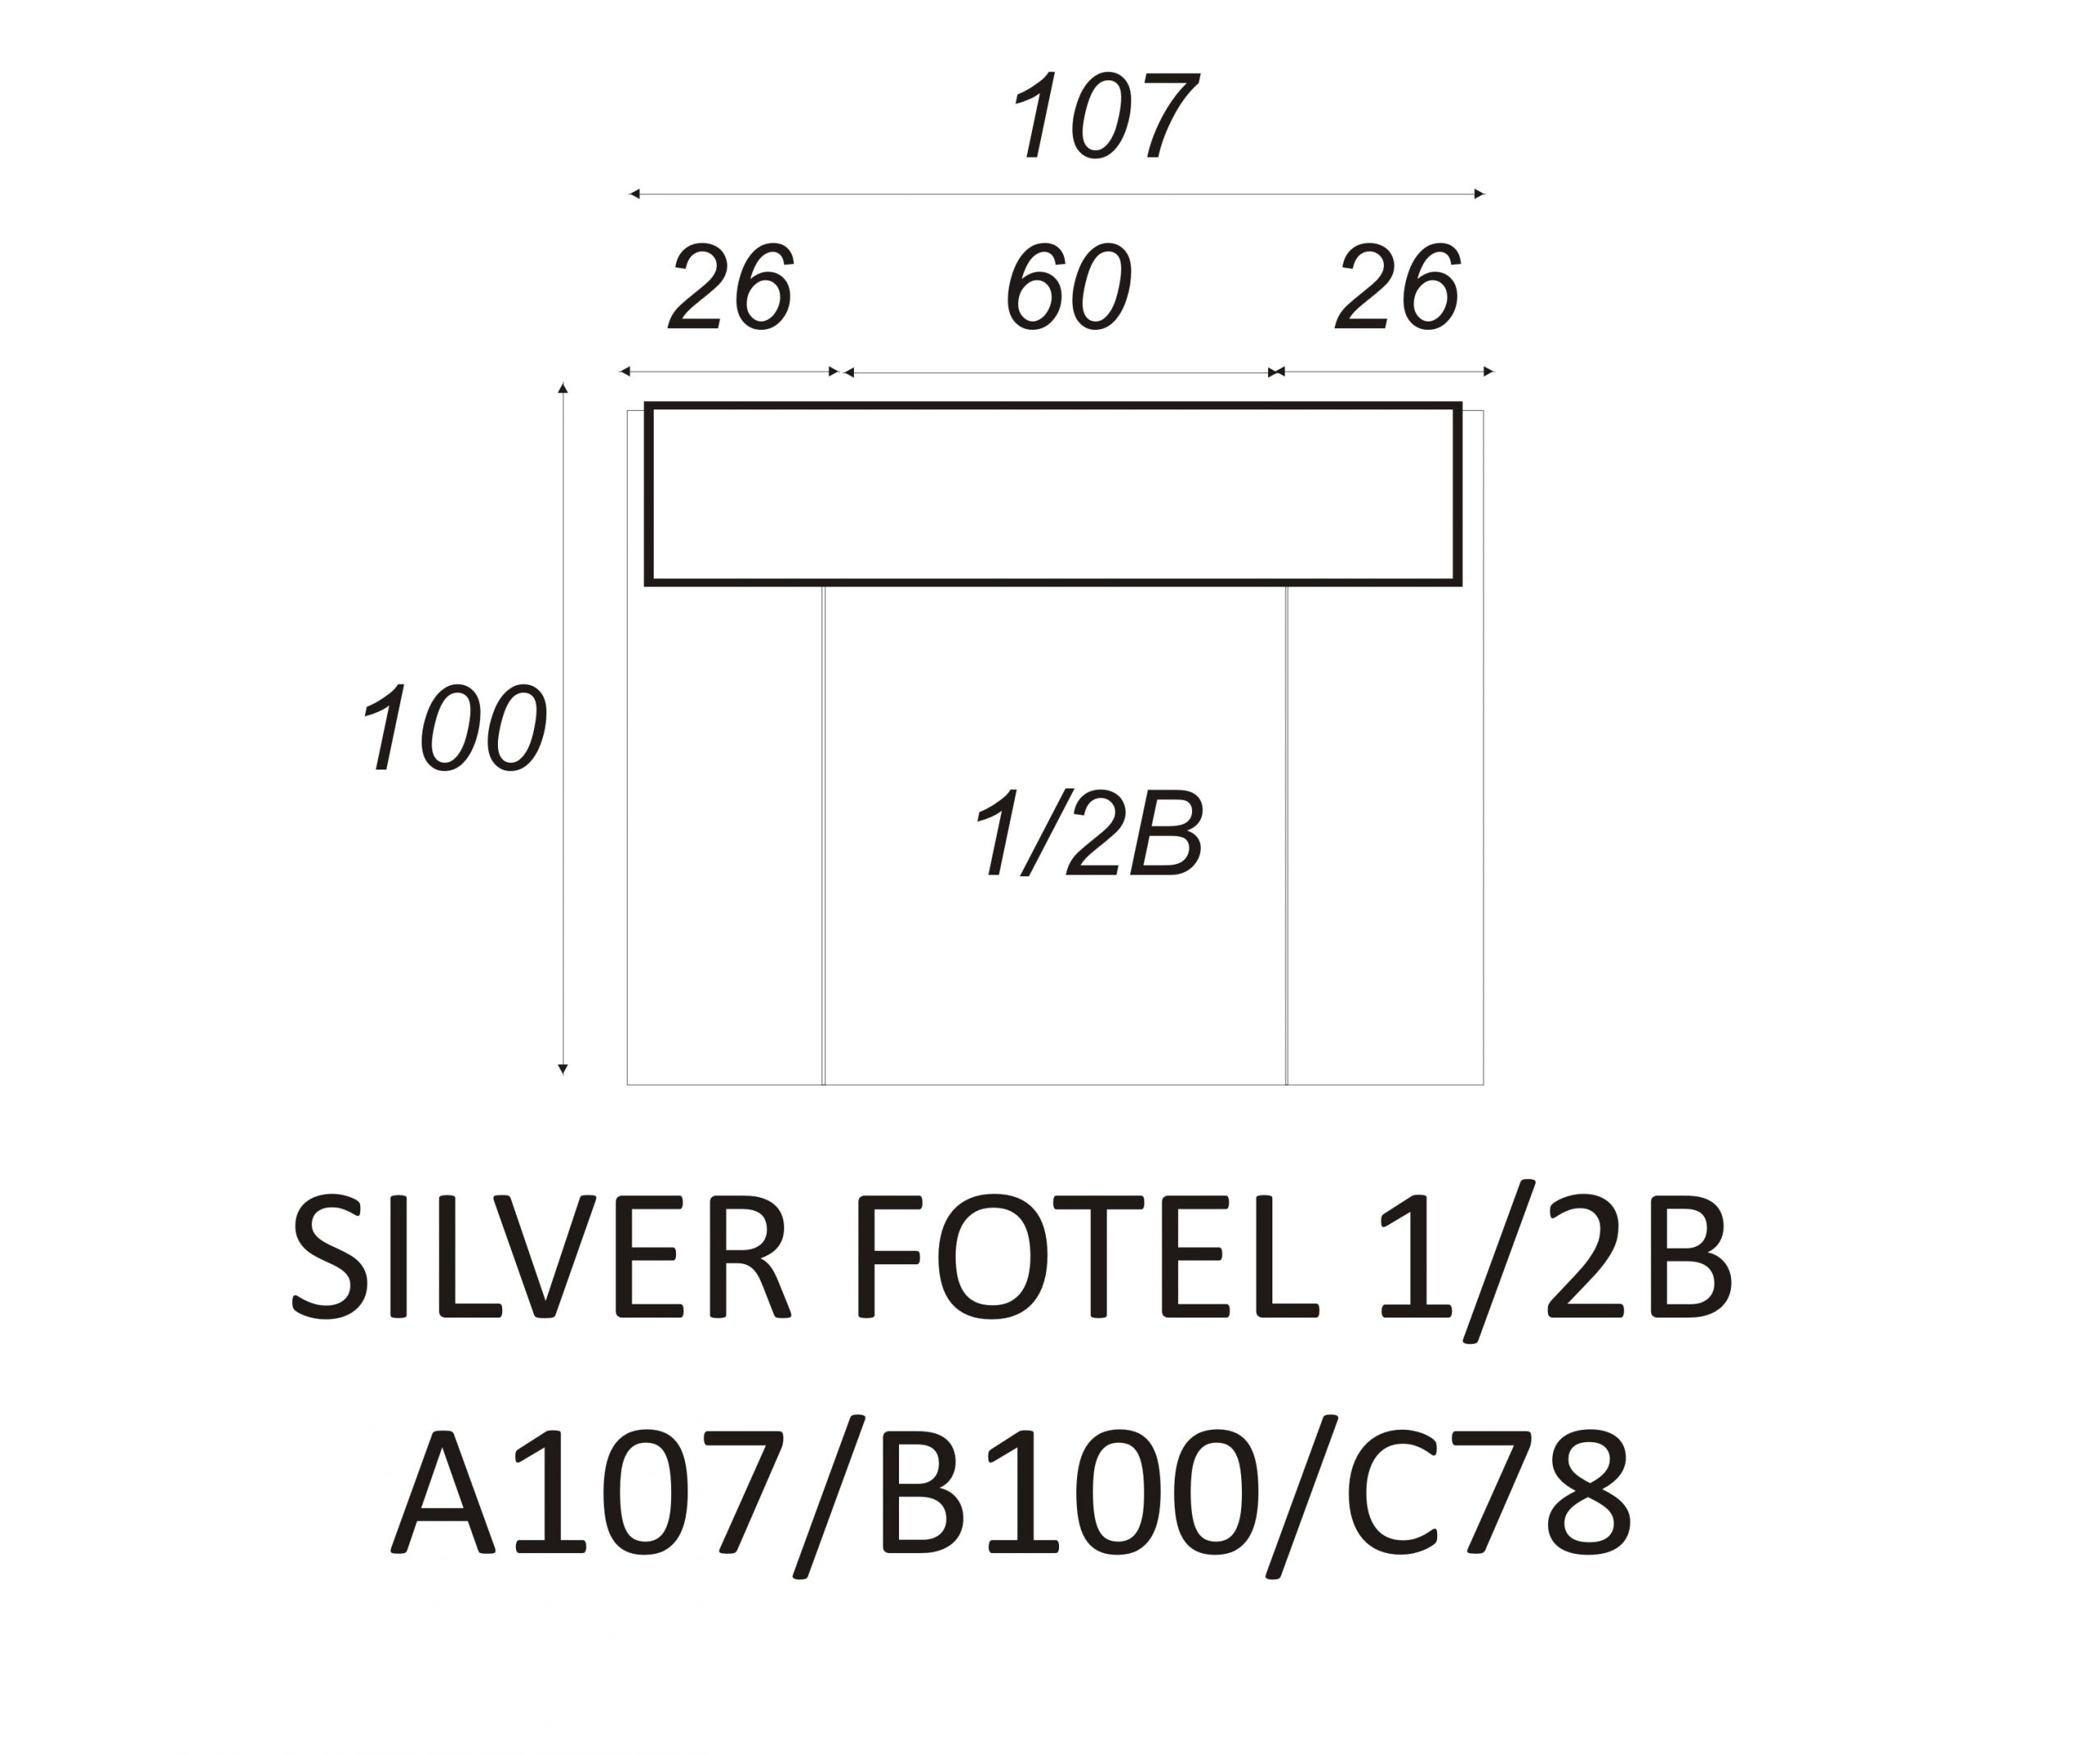 Fotel Silver 1/2B